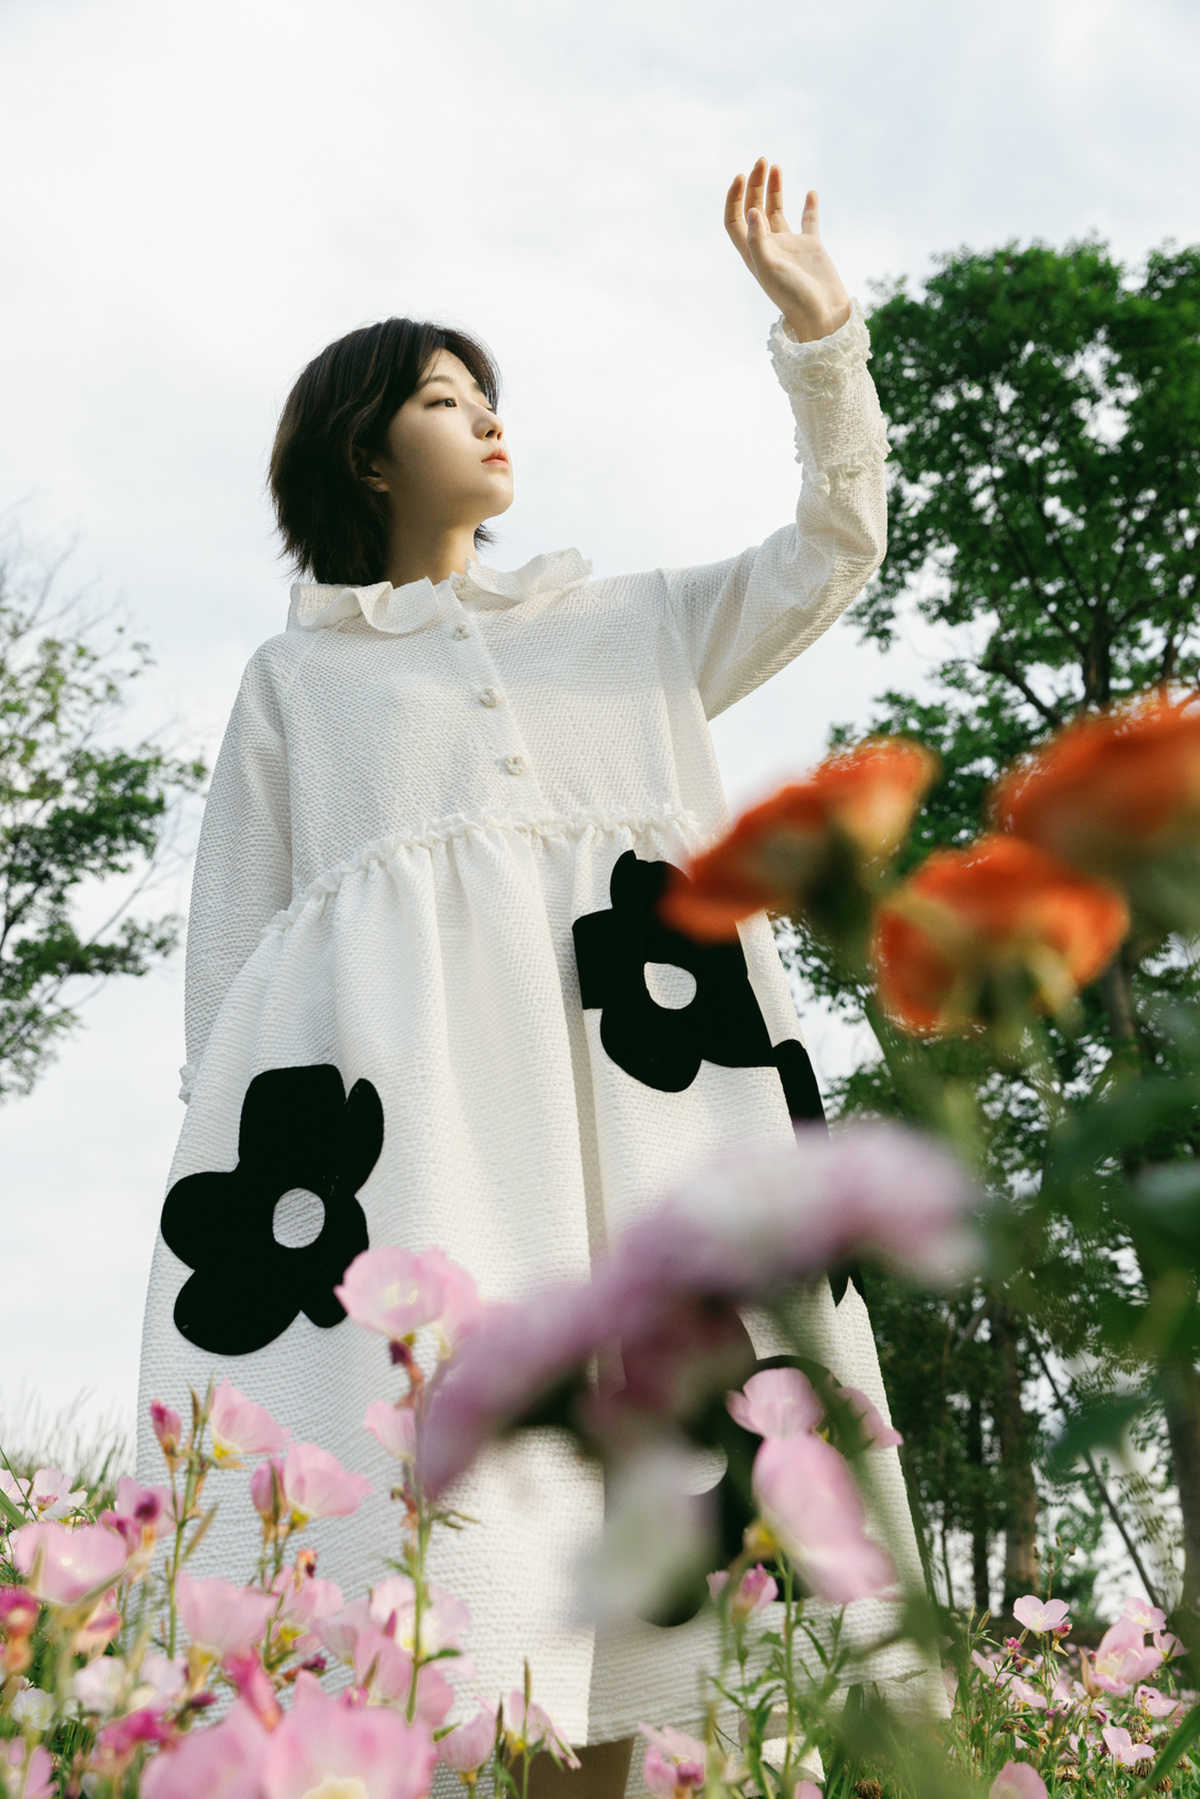 一个穿着白色连衣裙的年轻女子站在花田里 双手举向天空。